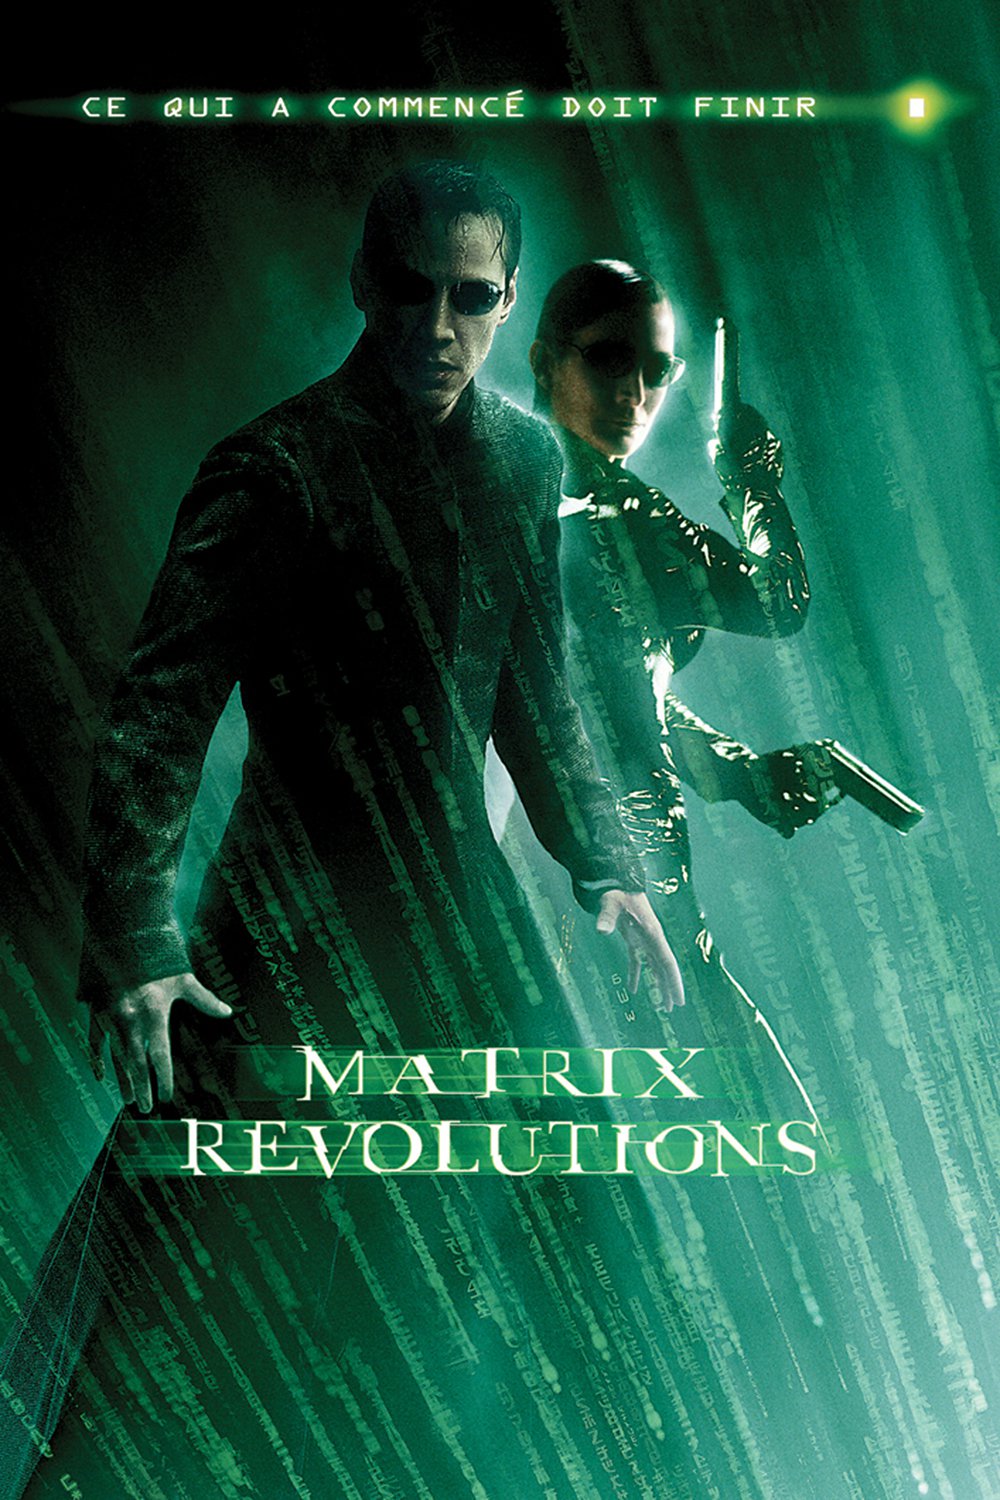 matrix revolutions cast